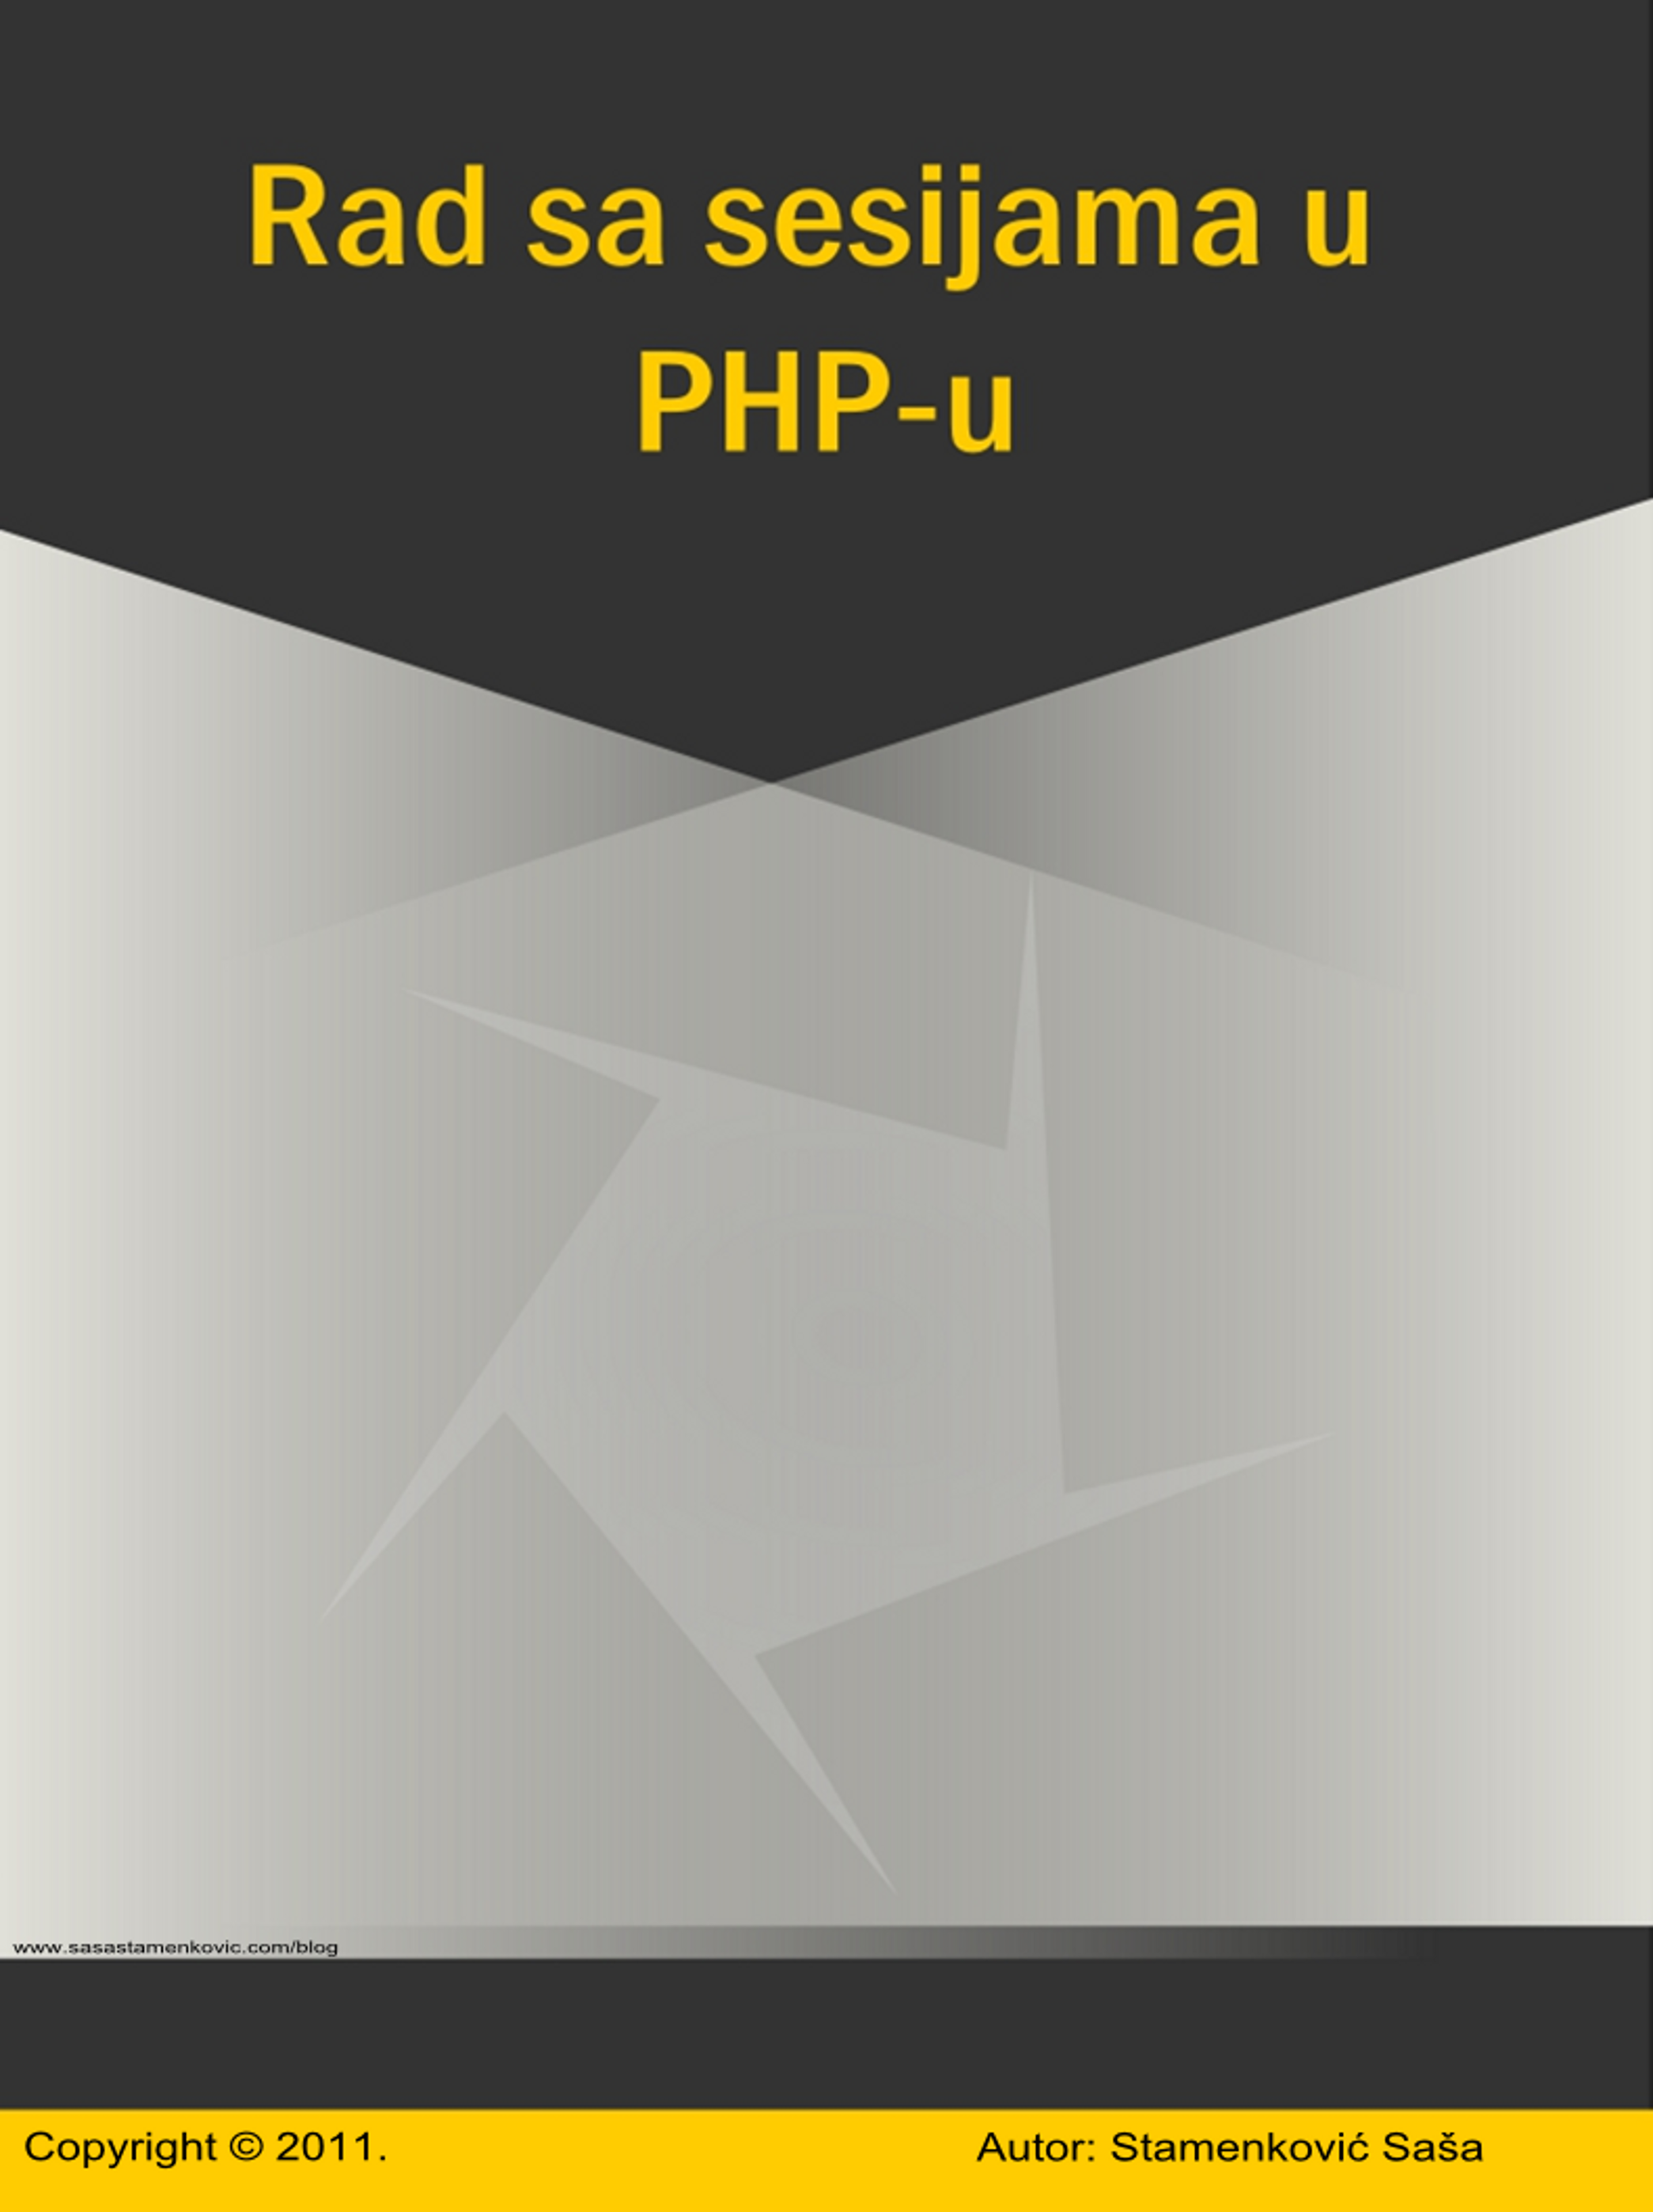 Rad sa sesijama u PHP - u icon